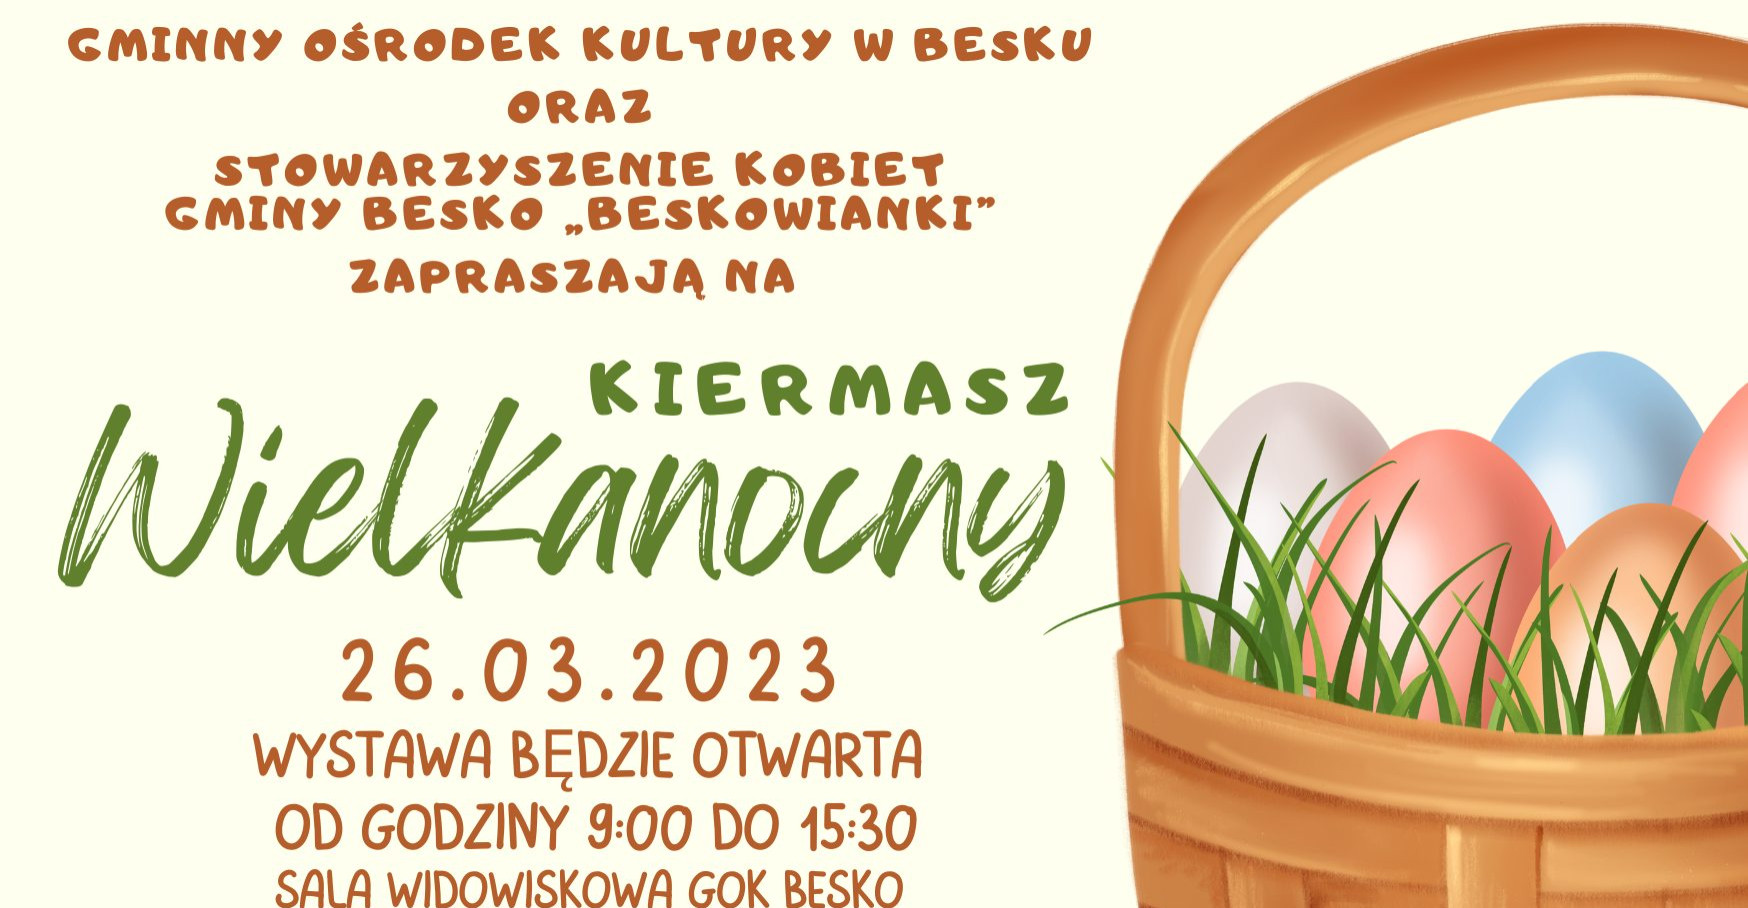 BESKO: Kiermasz Wielkanocny już w najbliższą niedzielę